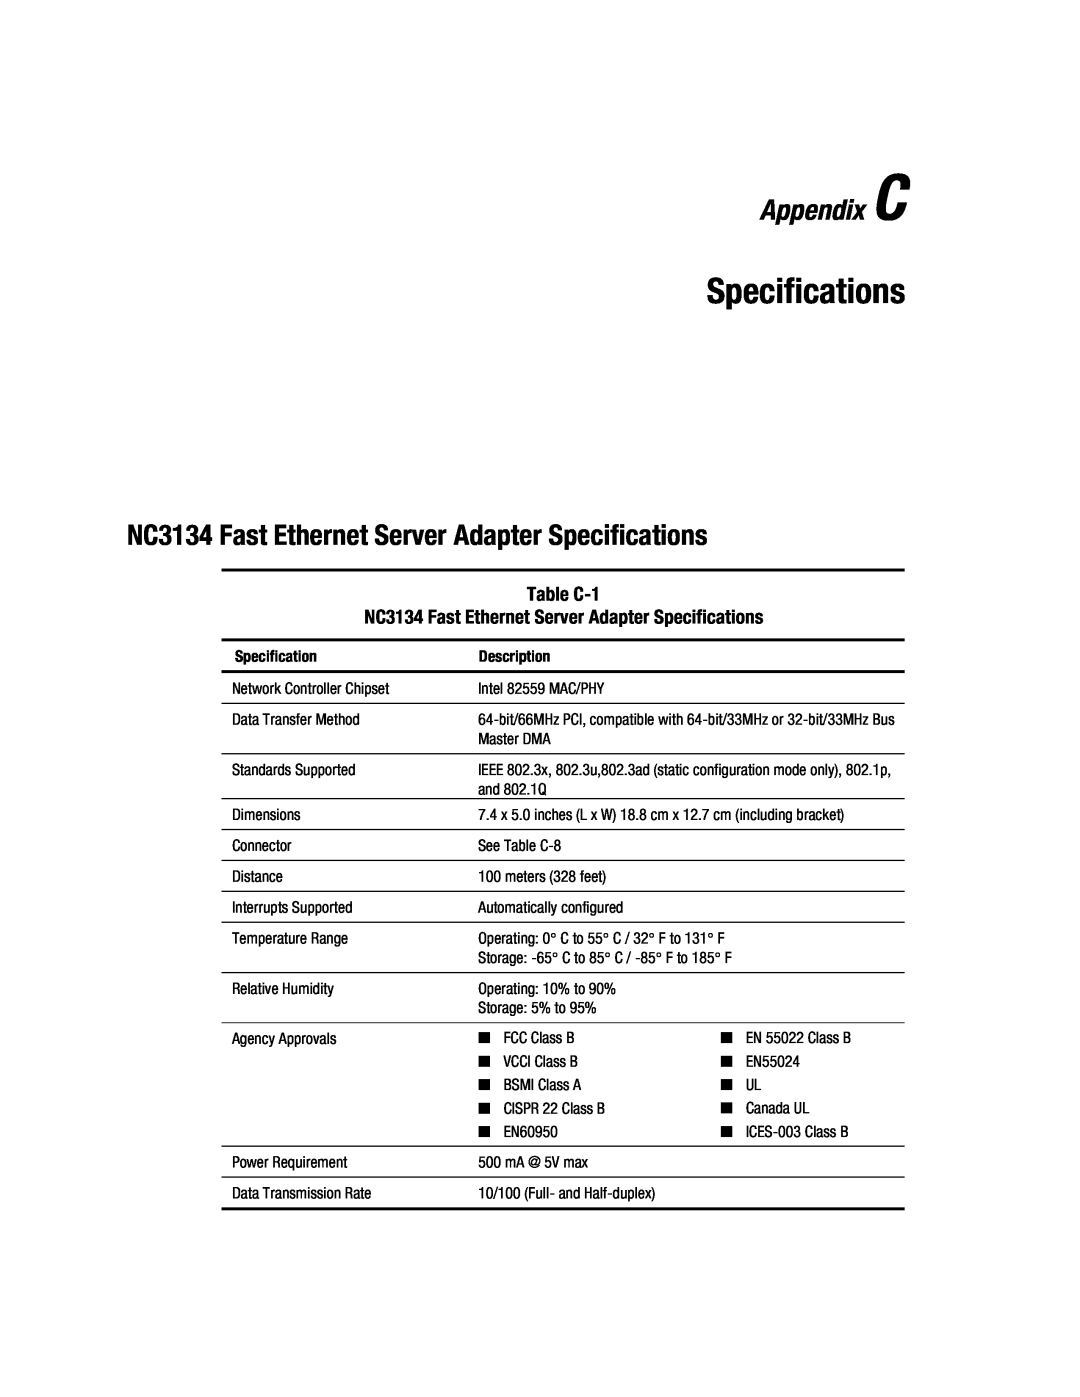 Compaq manual Appendix C, NC3134 Fast Ethernet Server Adapter Specifications, Description 